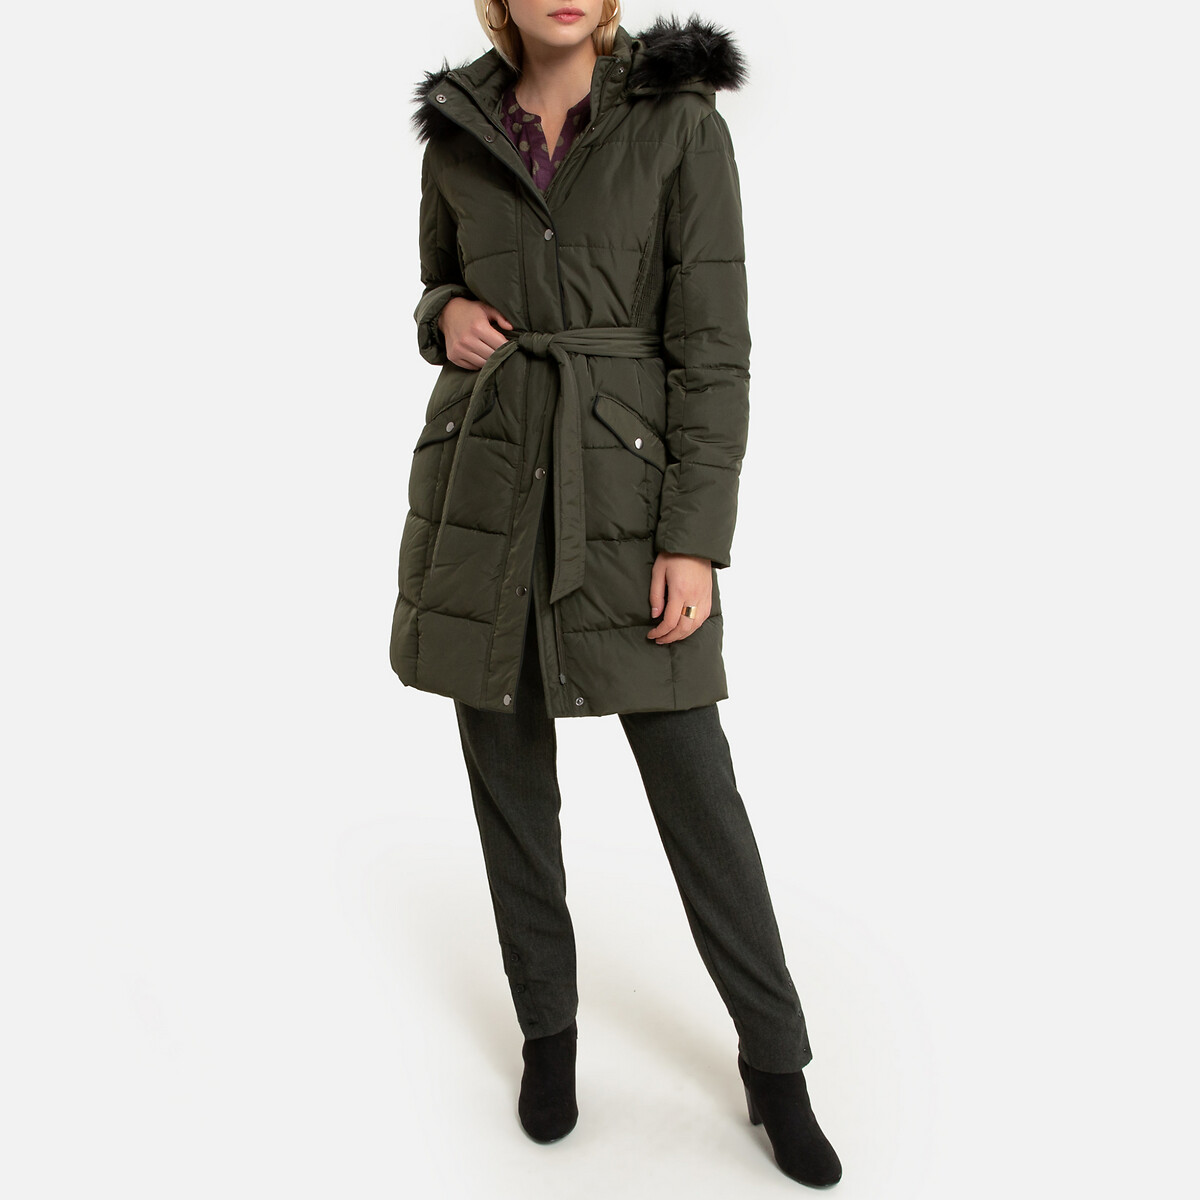 Куртка LaRedoute Стеганая средней длины с капюшоном зимняя модель 40 (FR) - 46 (RUS) зеленый, размер 40 (FR) - 46 (RUS) Стеганая средней длины с капюшоном зимняя модель 40 (FR) - 46 (RUS) зеленый - фото 2